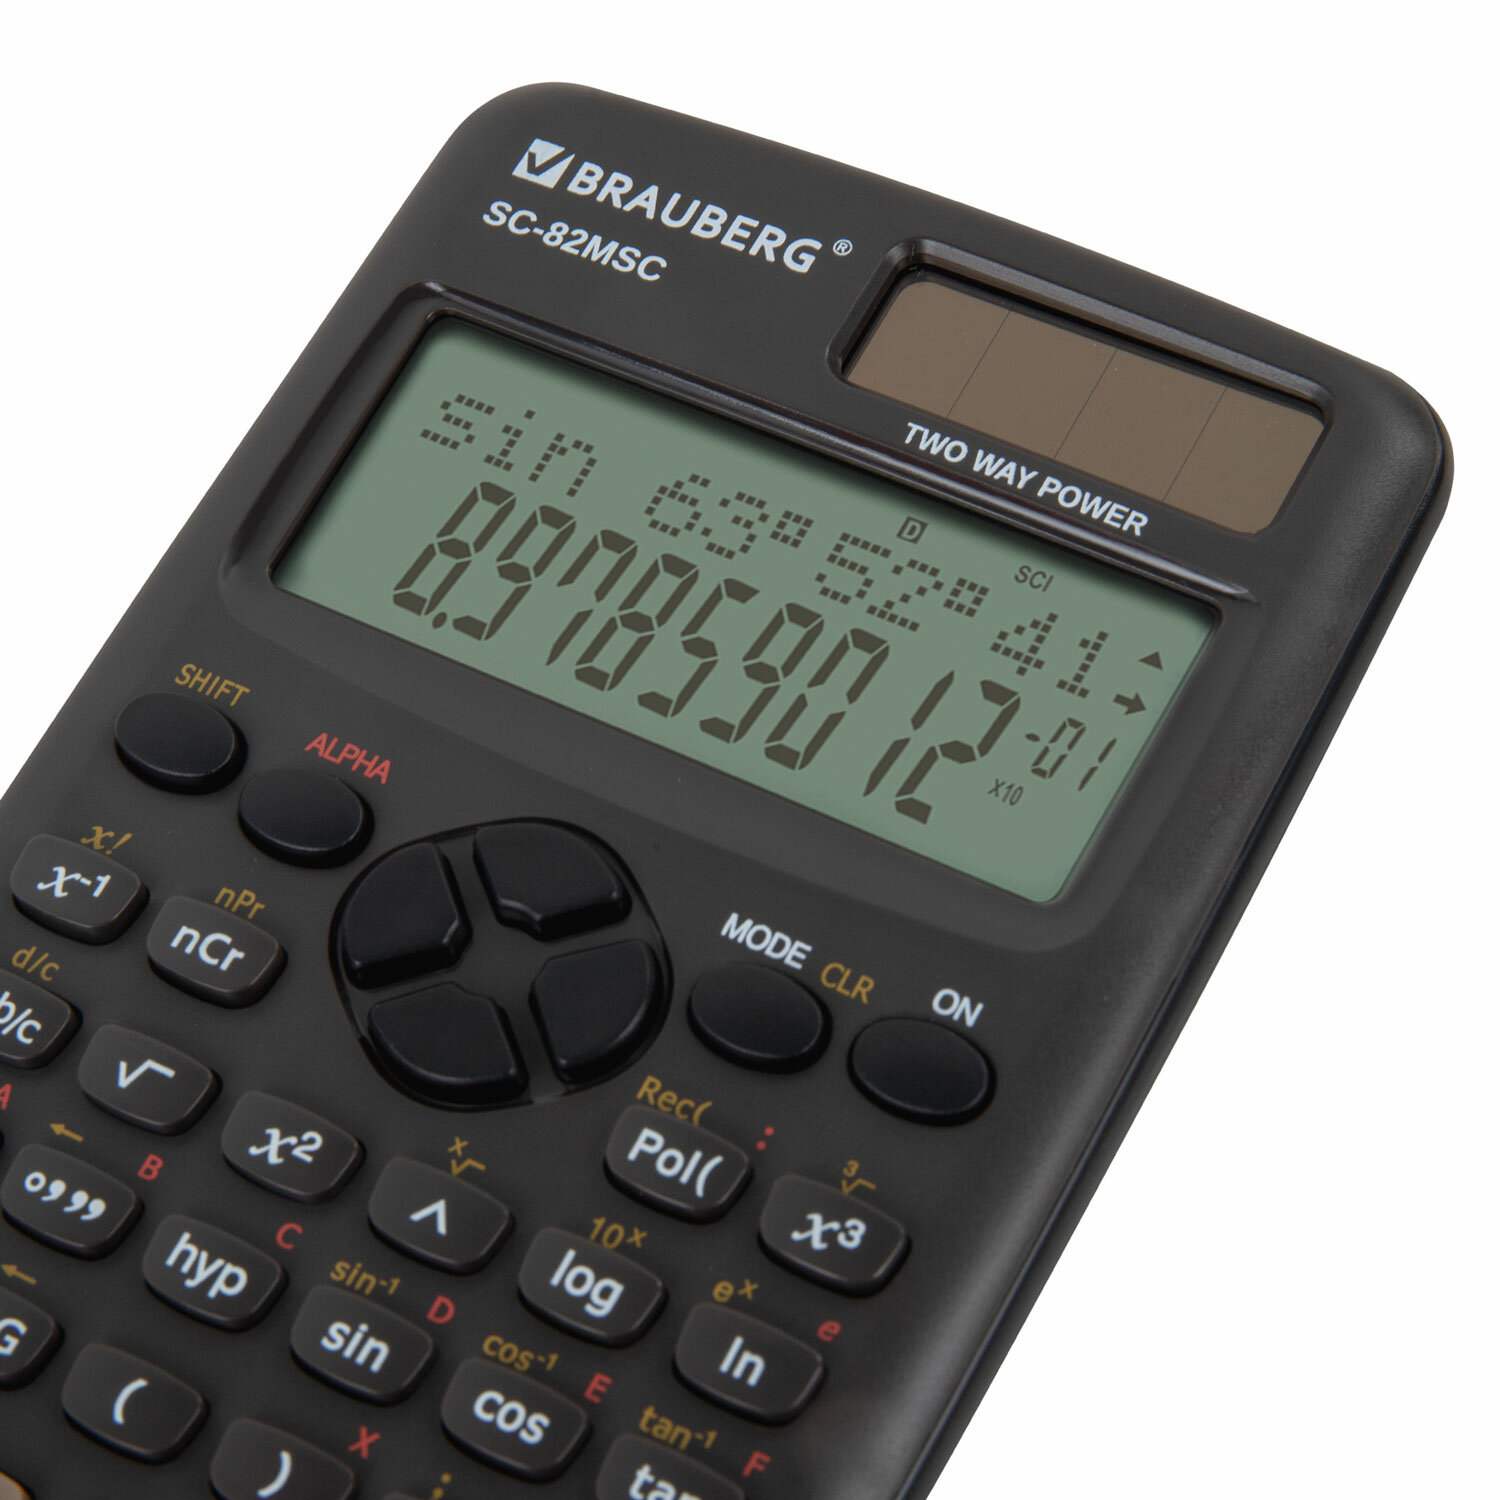 картинка Калькулятор инженерный, 12 разрядов, 16,5*8,4 см, двойное питание, 240 функций, "SC-82MSС", BRAUBERG, 271722 от магазина Альфанит в Кунгуре